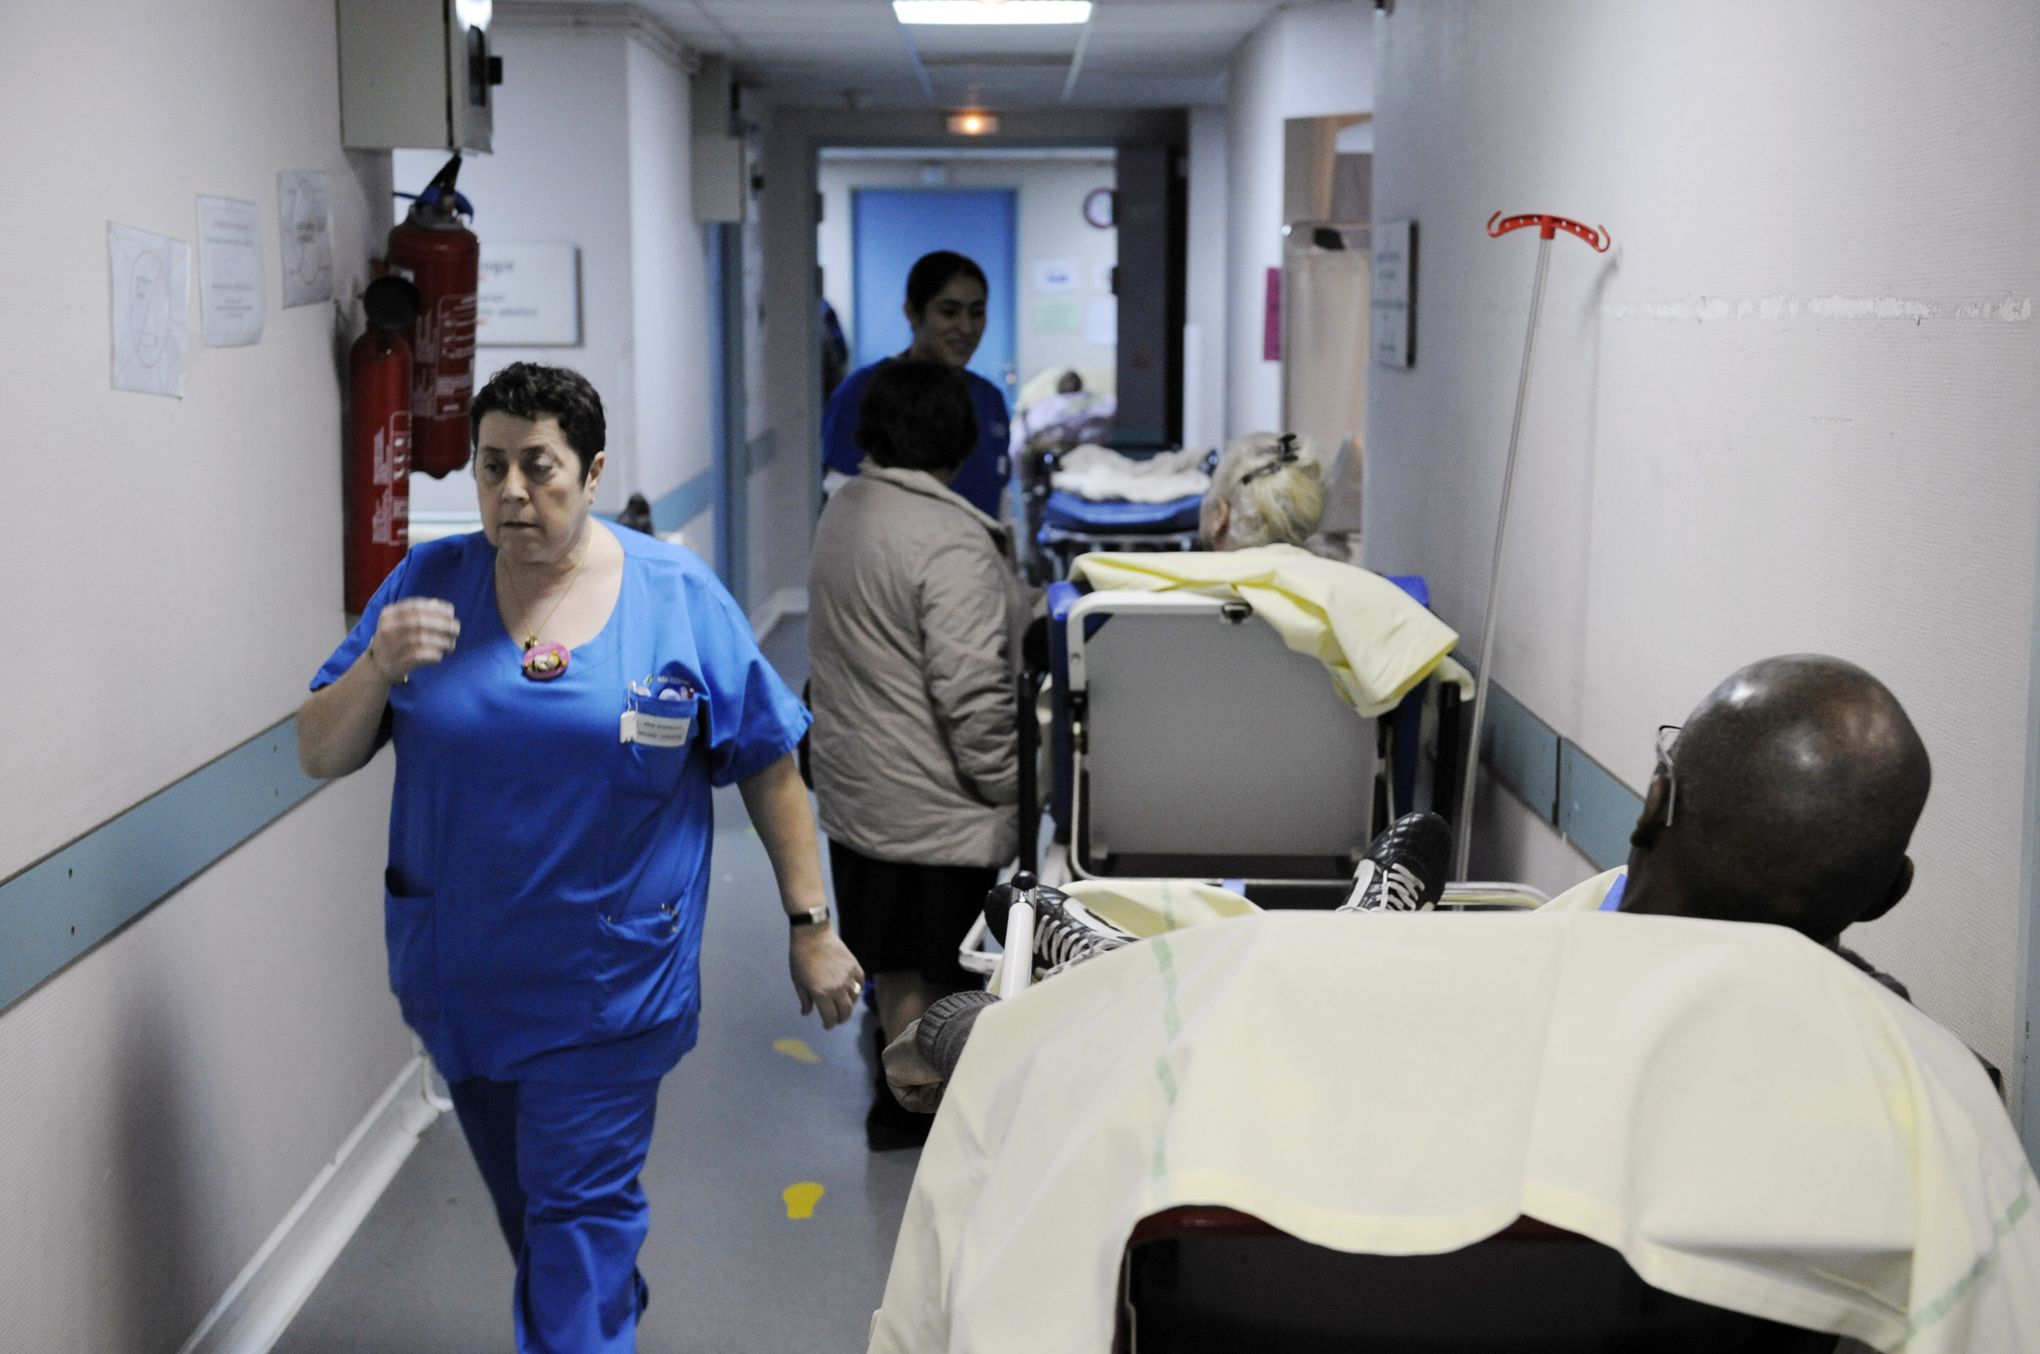 Urgences: onze médecins démissionnent collectivement à Dreux - Le Figaro